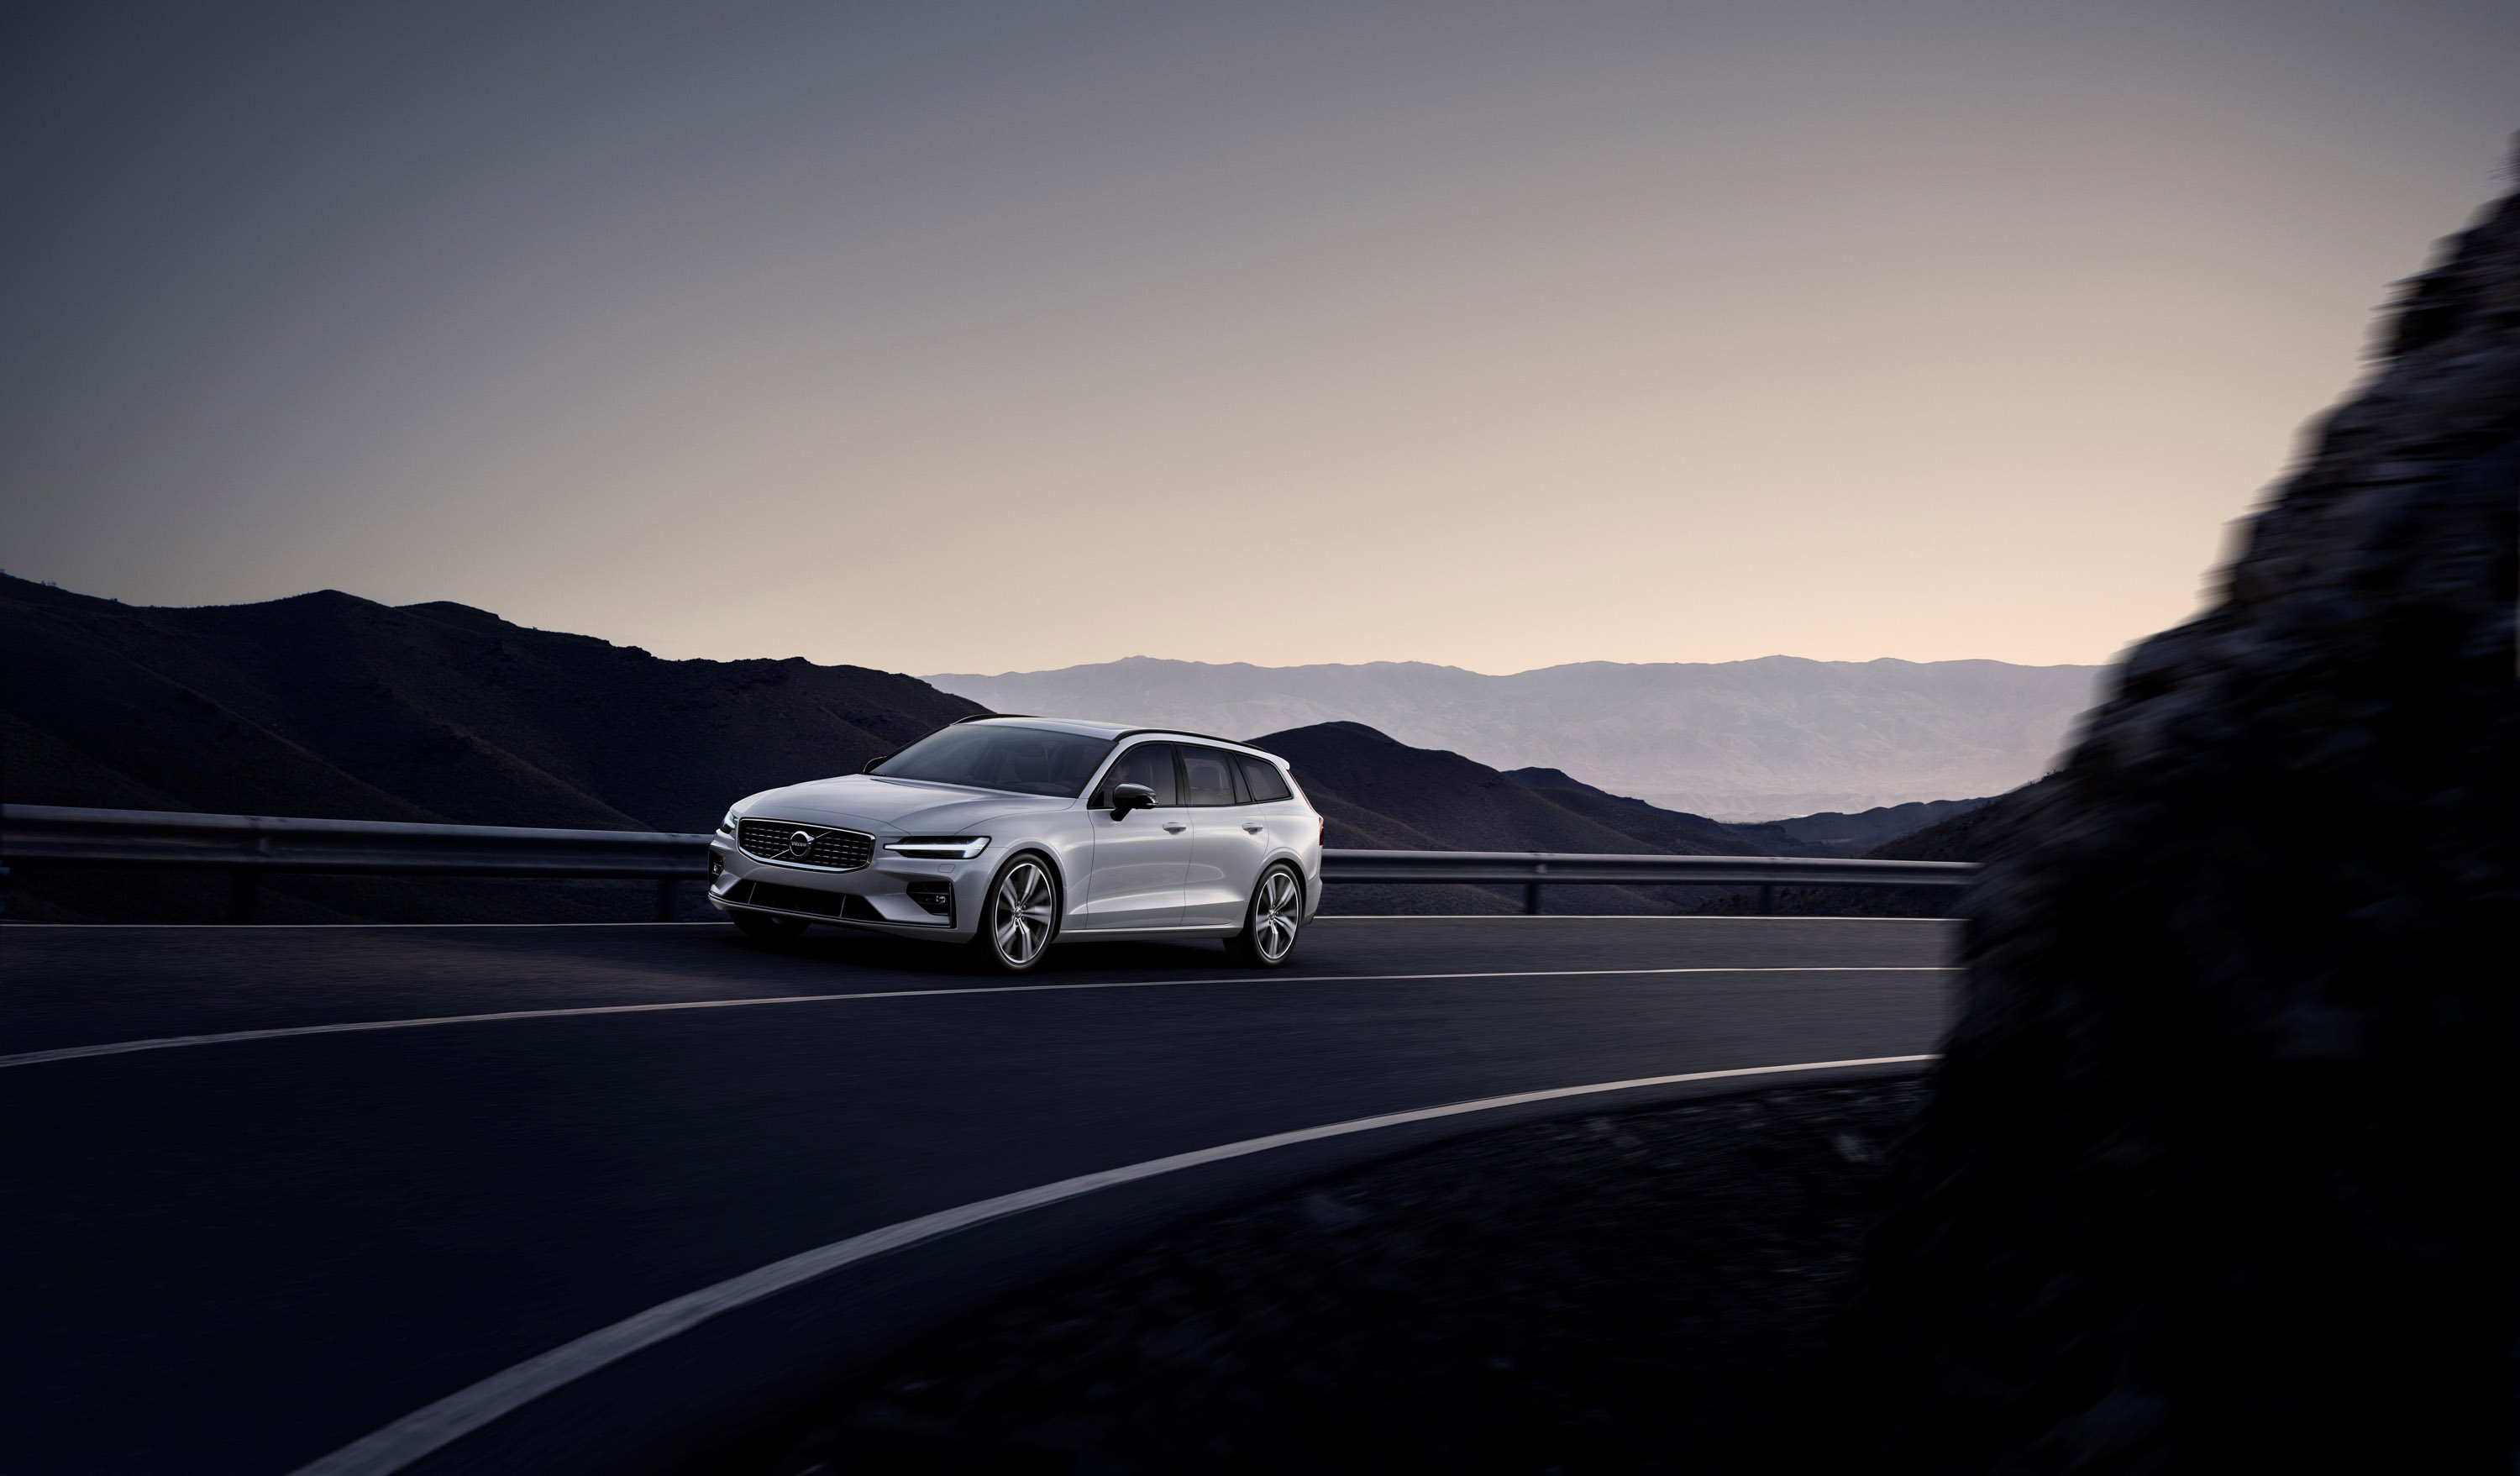 Volvo добавляет больше возможностей персонализации для автомобиля V60, предлагая новые модели R-Design.